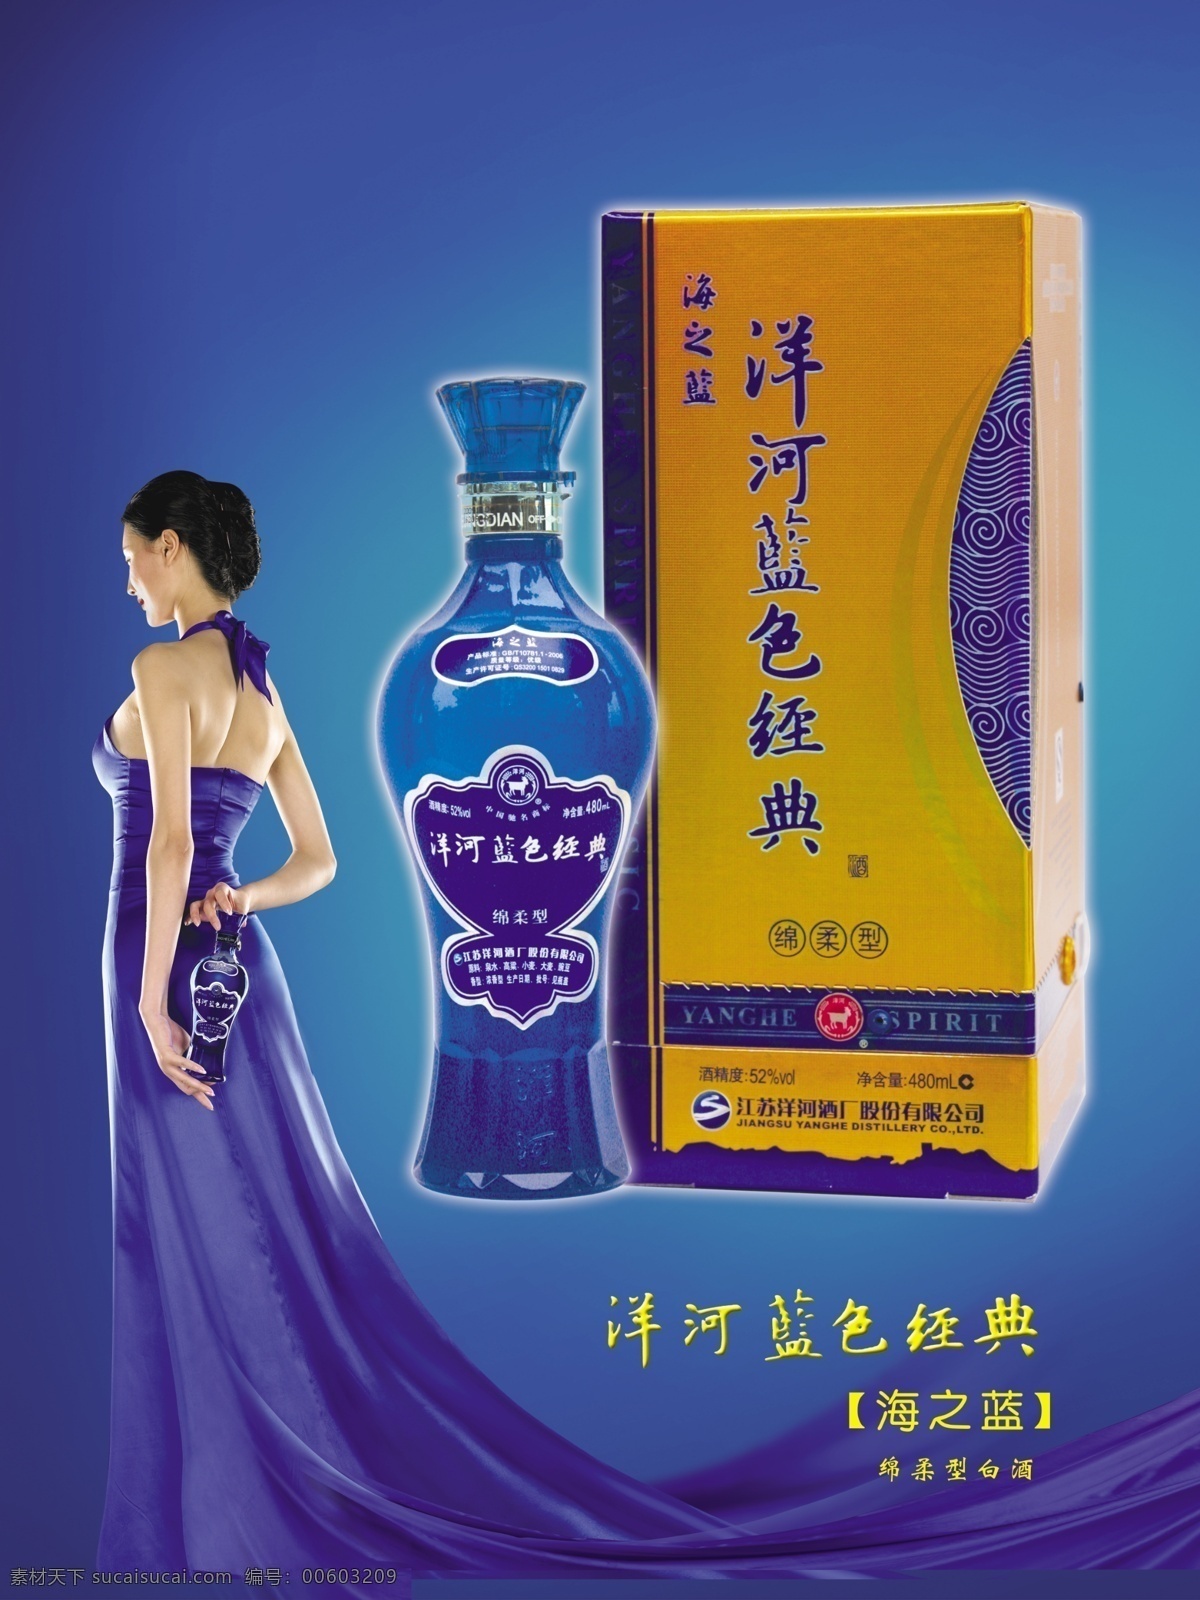 洋河蓝色经典 洋河 酒瓶 蓝色背景 美女 酒瓶展示牌 ps素材 广告设计模板 源文件